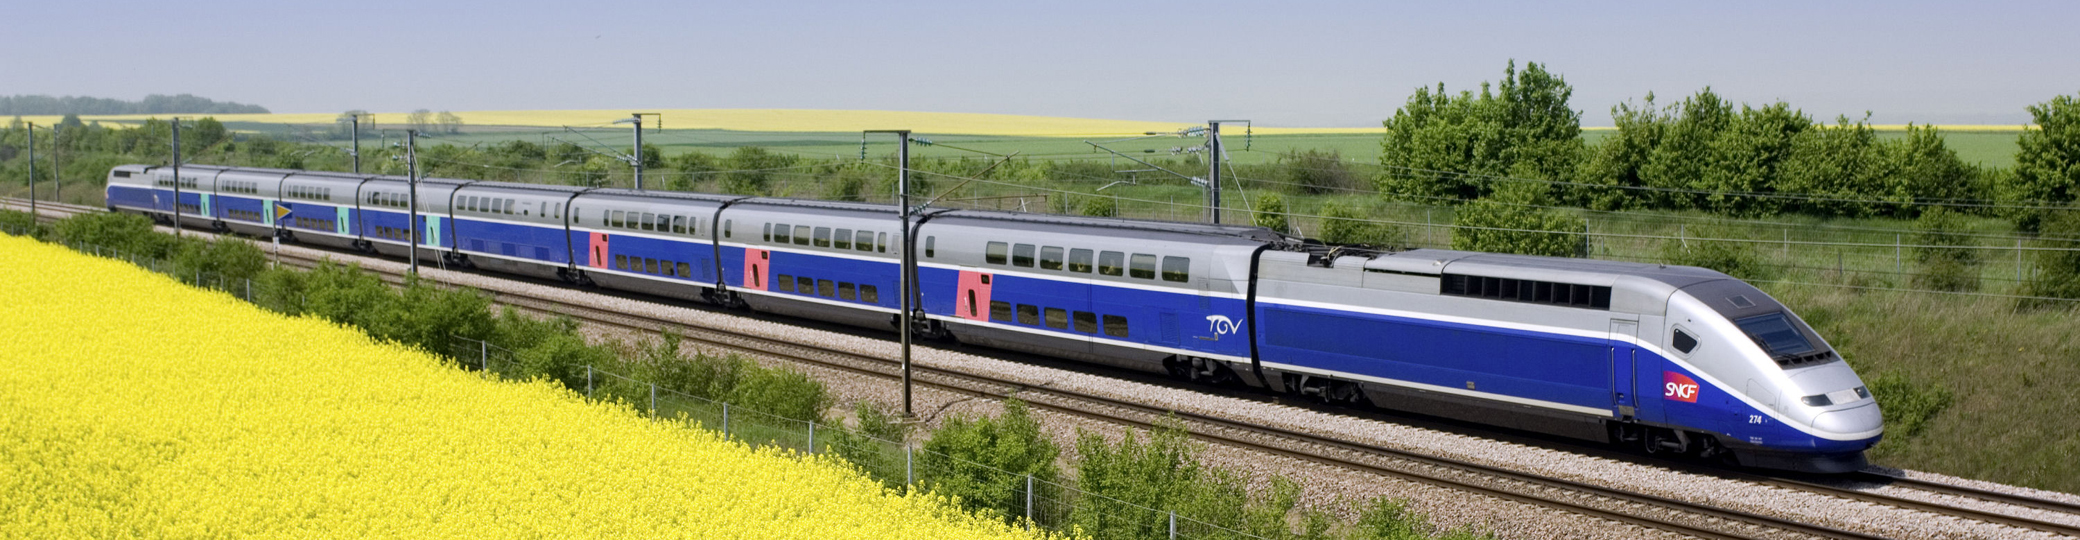 Trenes de alta velocidad de Europa